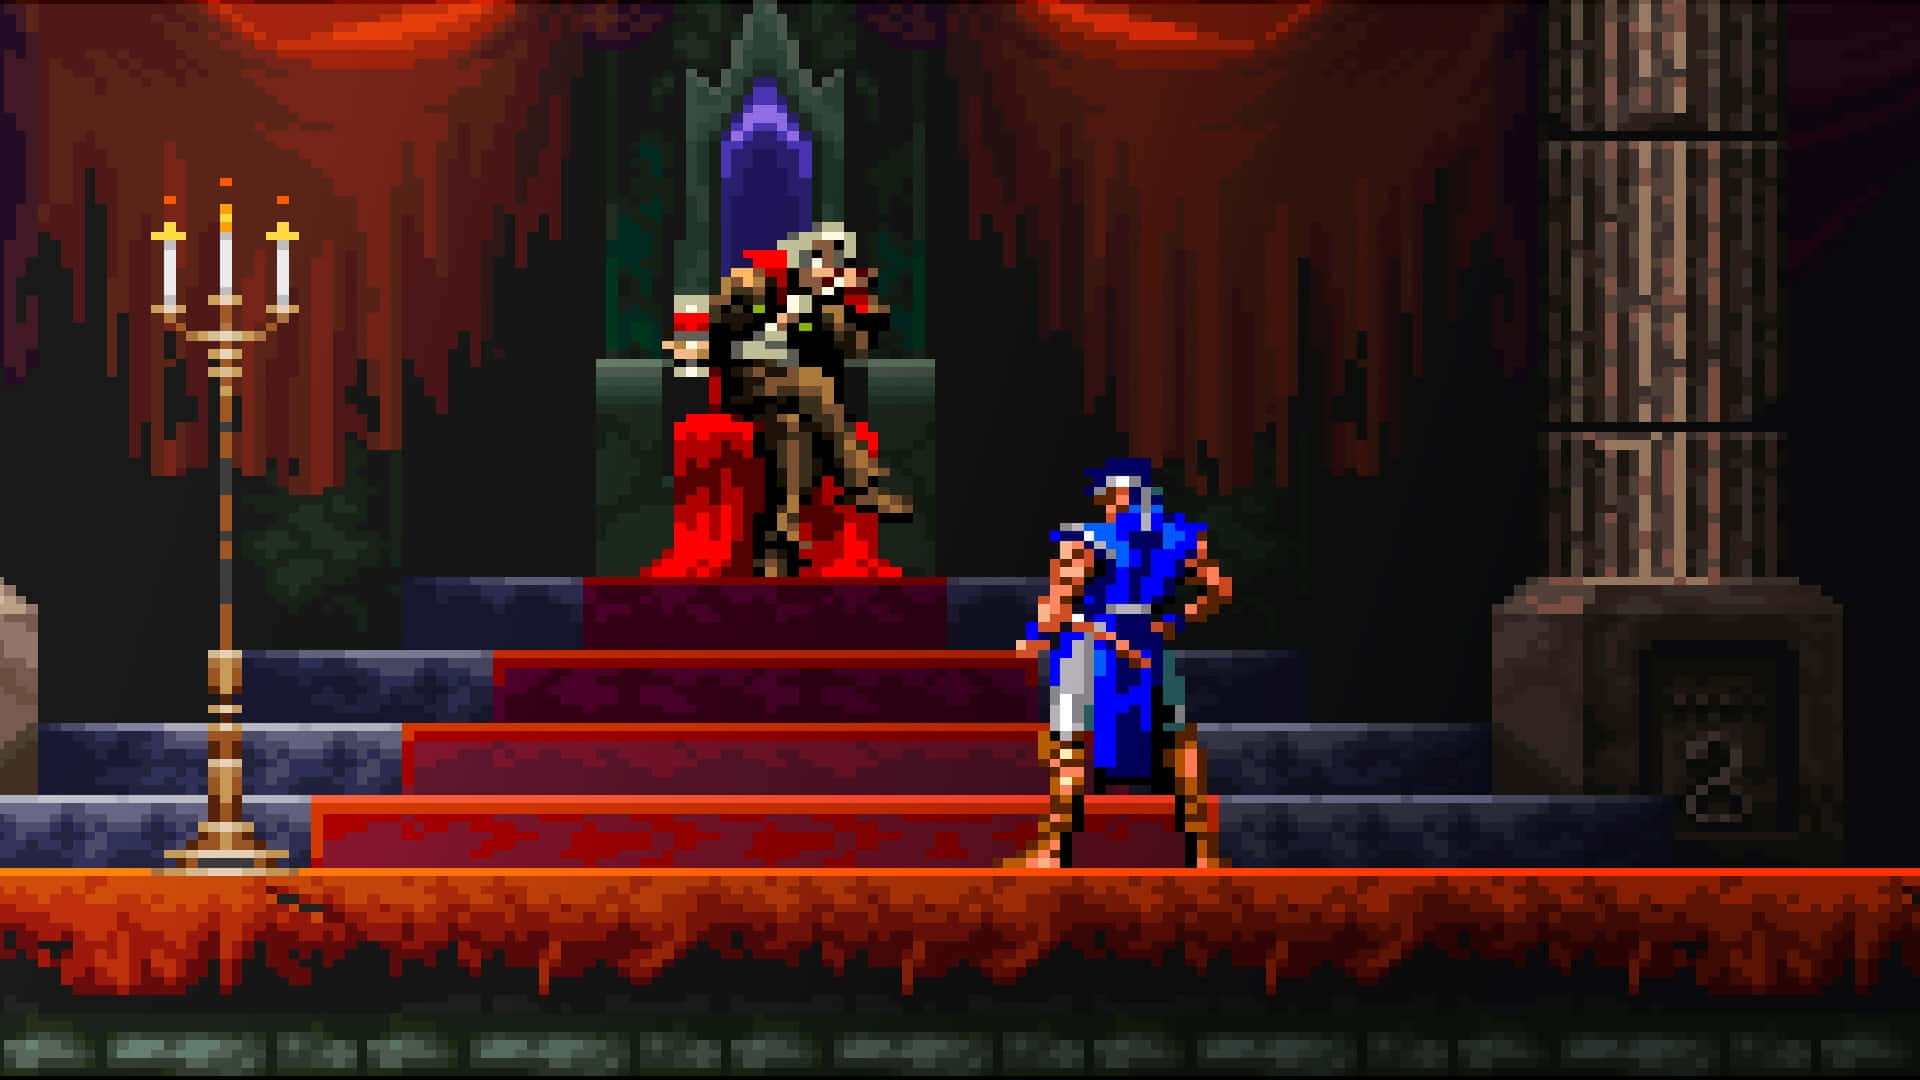 Einscreenshot Eines Videospiels Mit Zwei Charakteren Auf Einer Bühne.